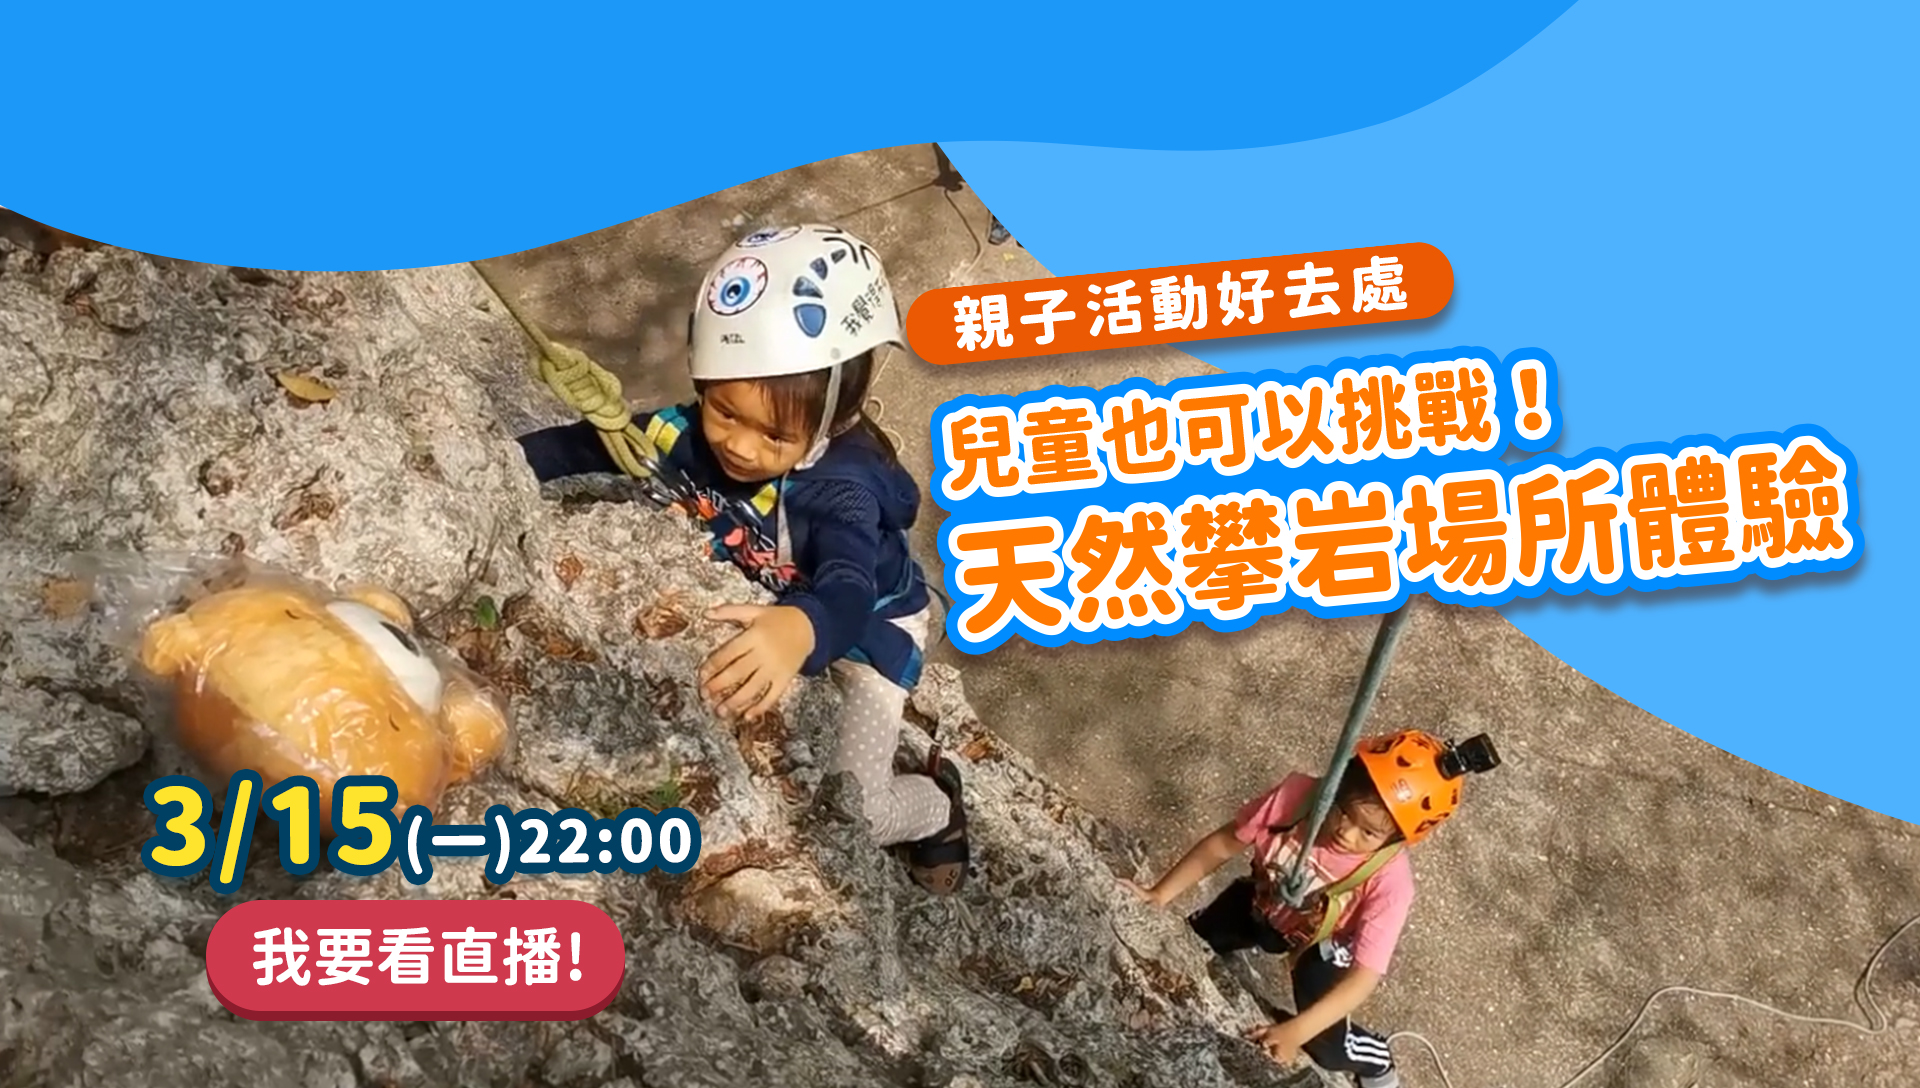 親子活動好去處 兒童也可以挑戰天然攀岩場體驗